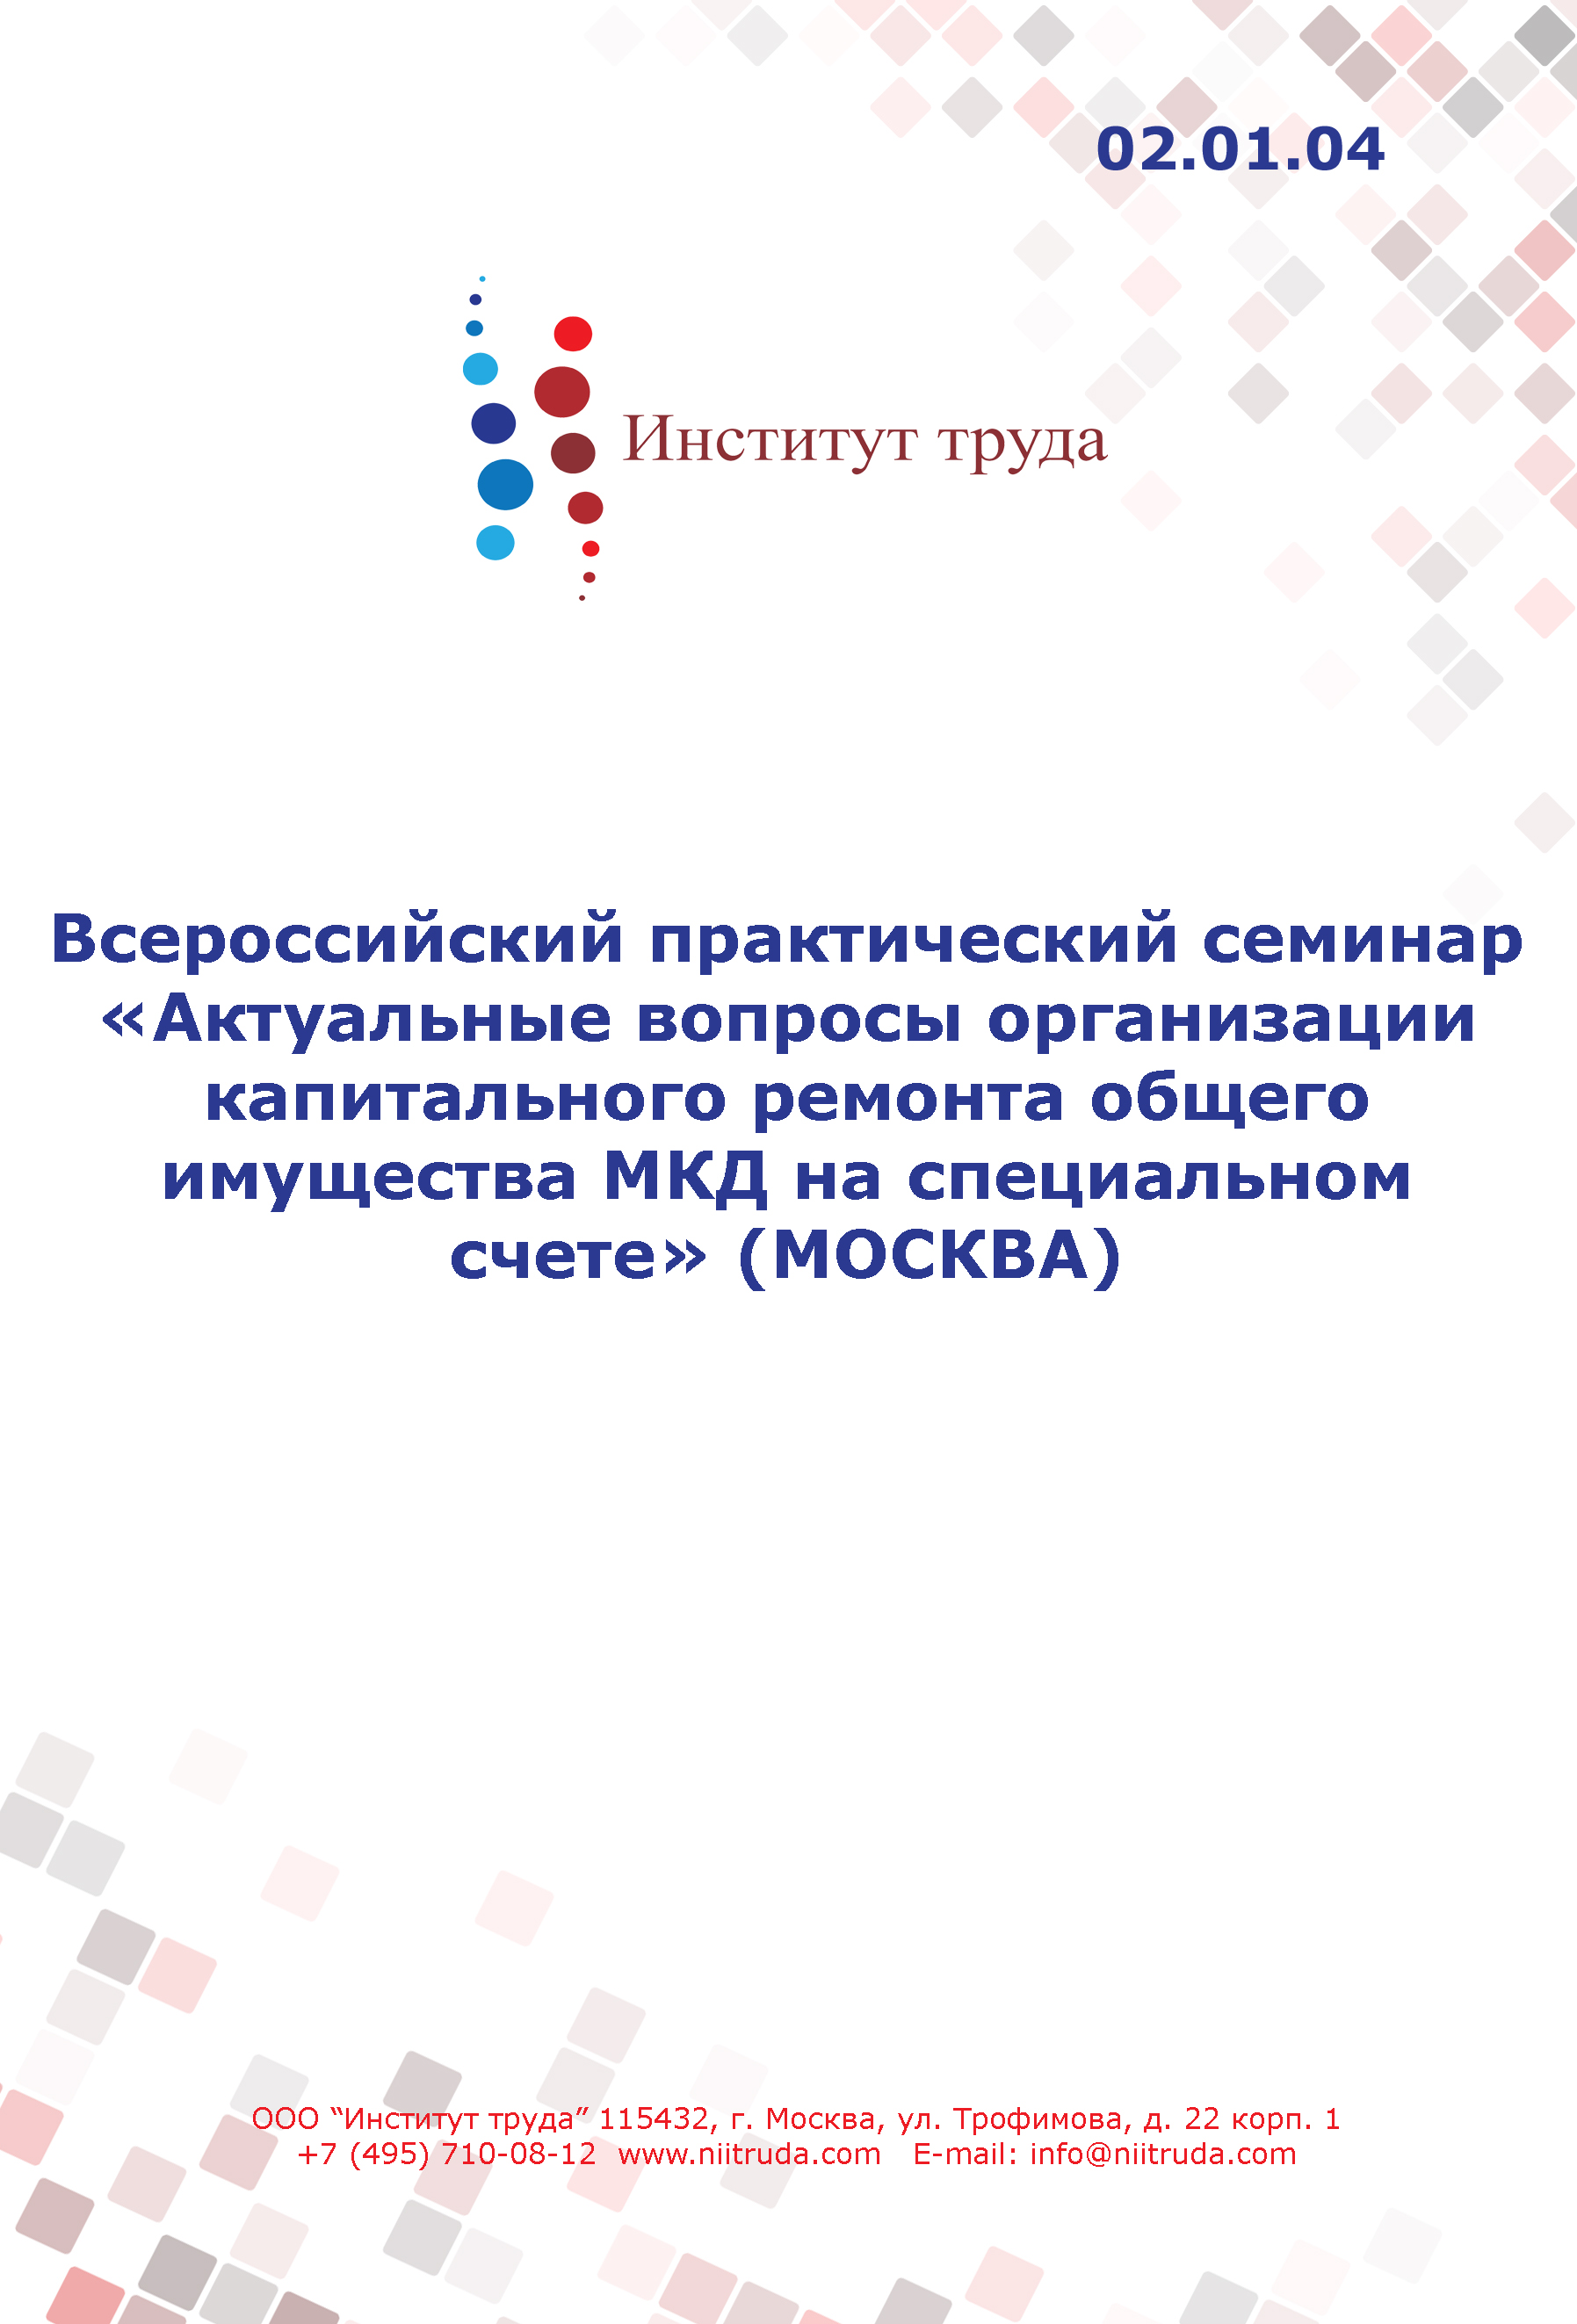 Всероссийский практический семинар «Актуальные вопросы организации капитального ремонта общего имущества МКД на специальном счете» (МОСКВА)